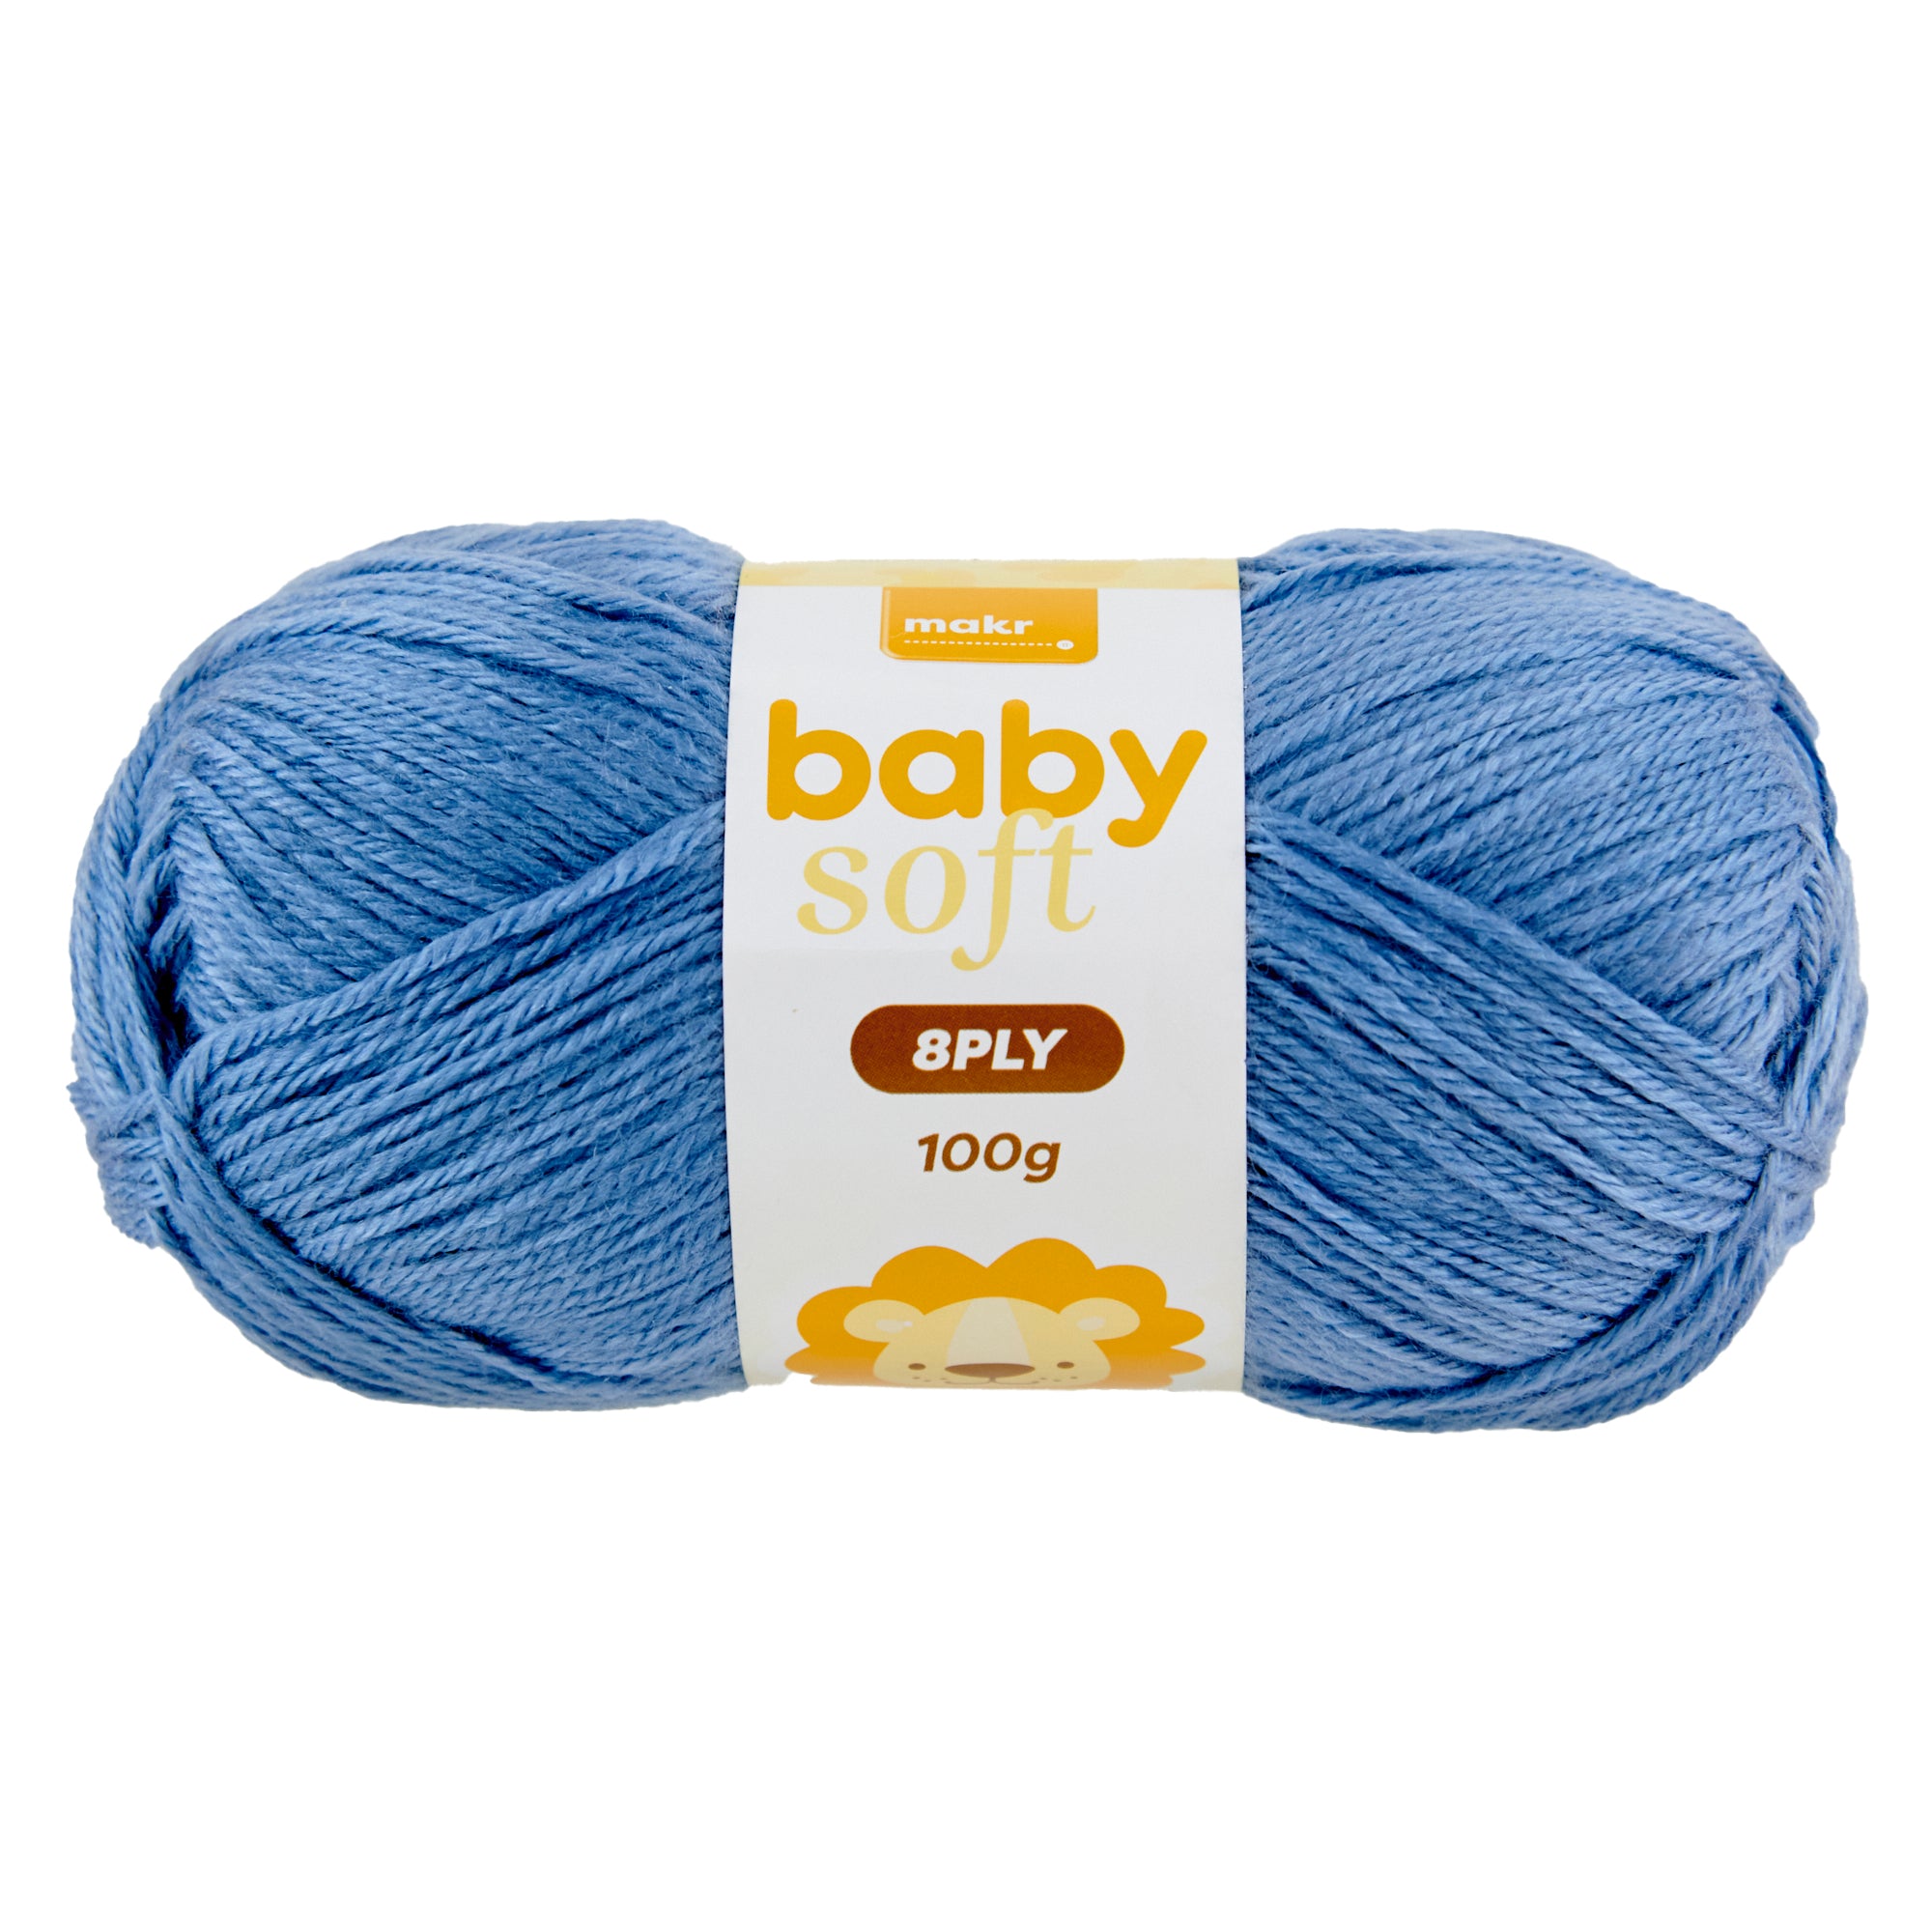 Makr Baby Soft Crochet & Knitting Yarn 8ply, White- 100g Acrylic Nylon –  Lincraft New Zealand